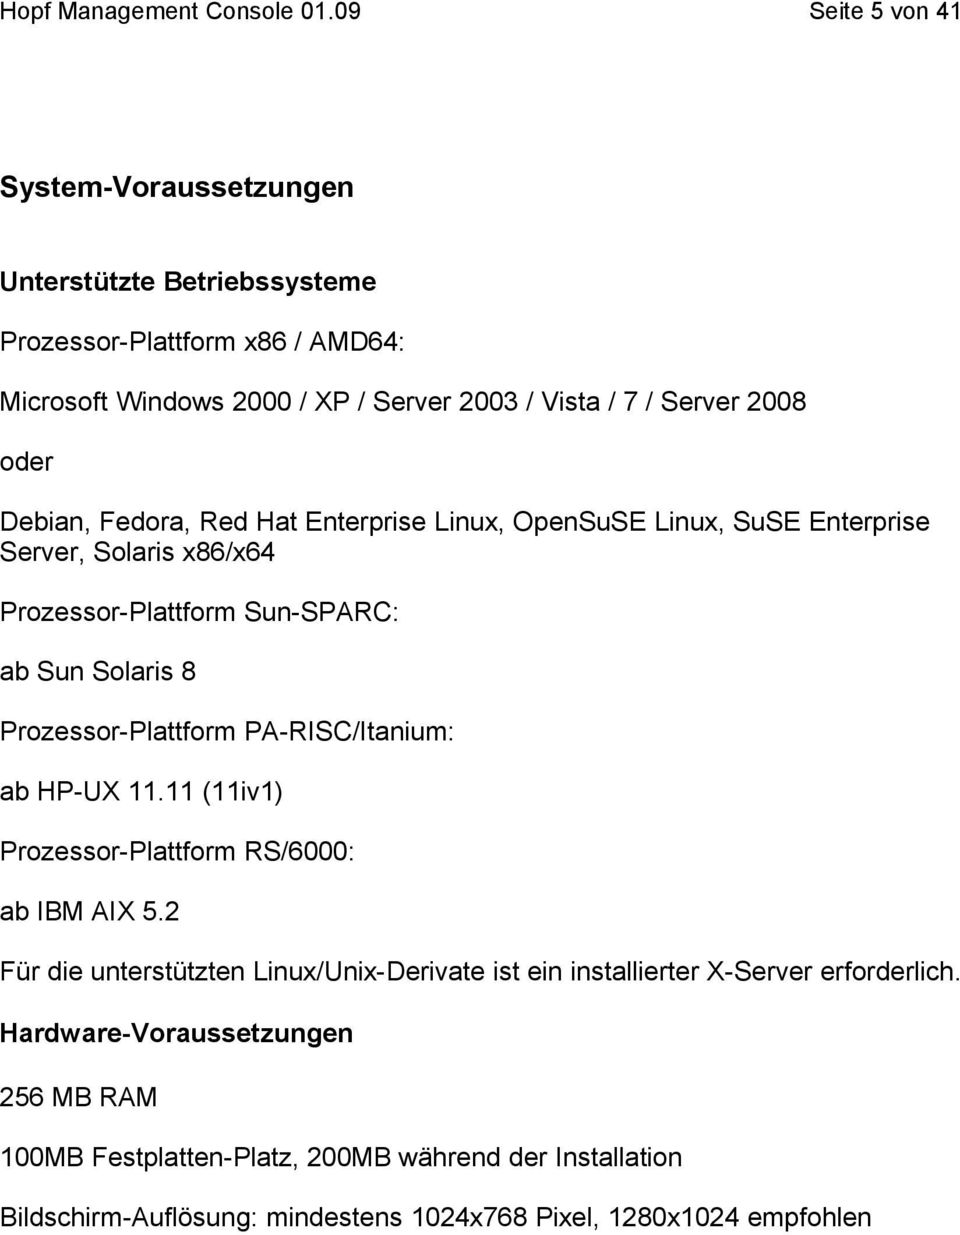 Prozessor-Plattform PA-RISC/Itanium: ab HP-UX 11.11 (11iv1) Prozessor-Plattform RS/6000: ab IBM AIX 5.